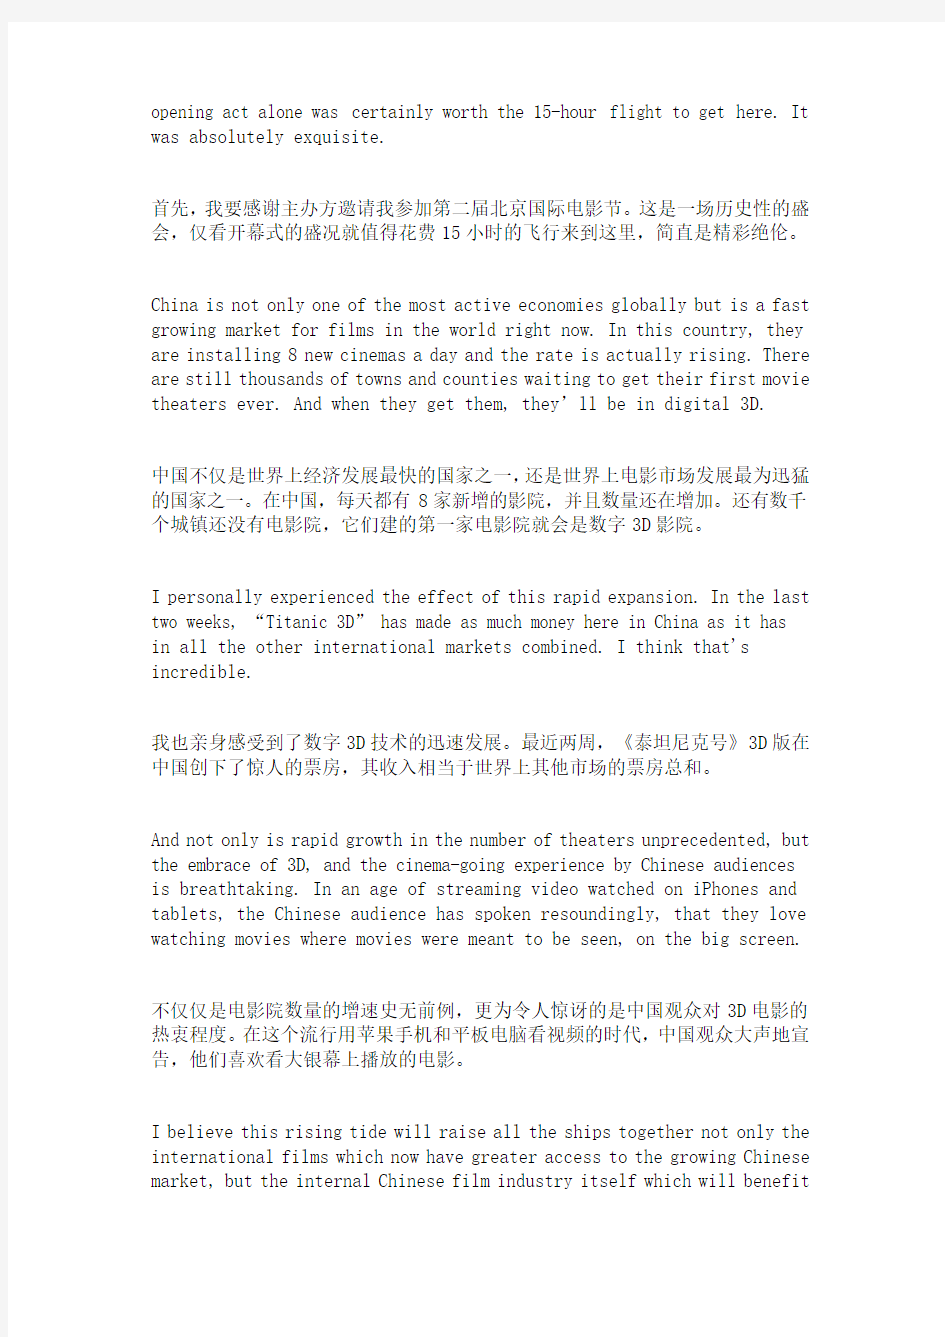 2012卡梅隆导演第二届北京国际电影节开幕式致辞 中英对照